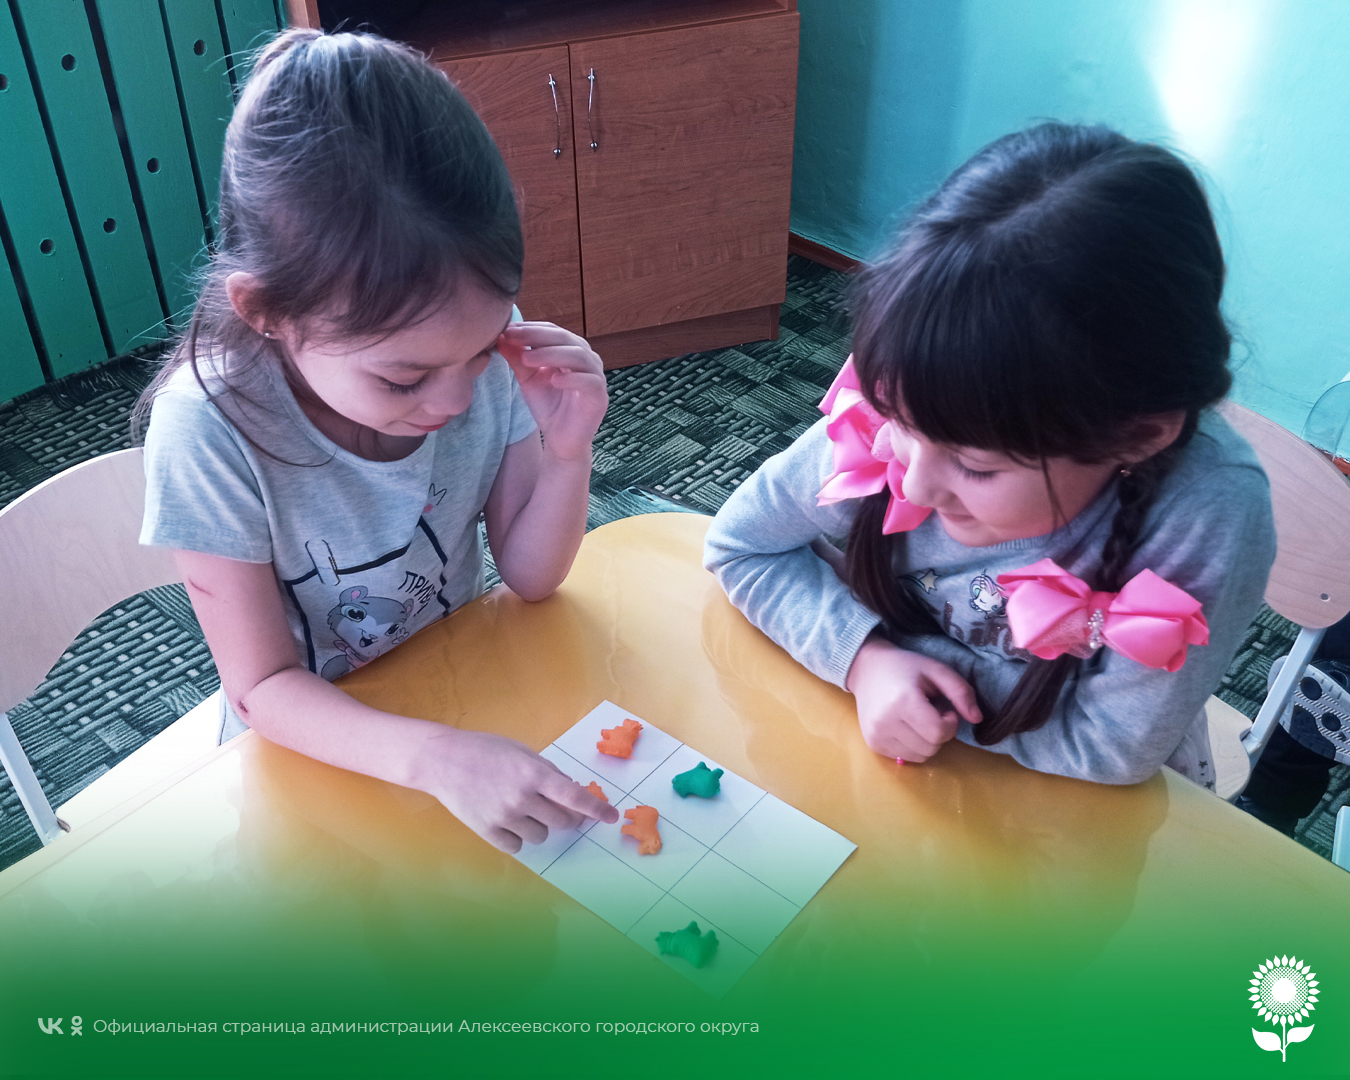 В целях развития логического мышления дошкольников в детских садах Алексеевского городского округа прошли познавательные занятия, приуроченные ко Дню крестиков-ноликов